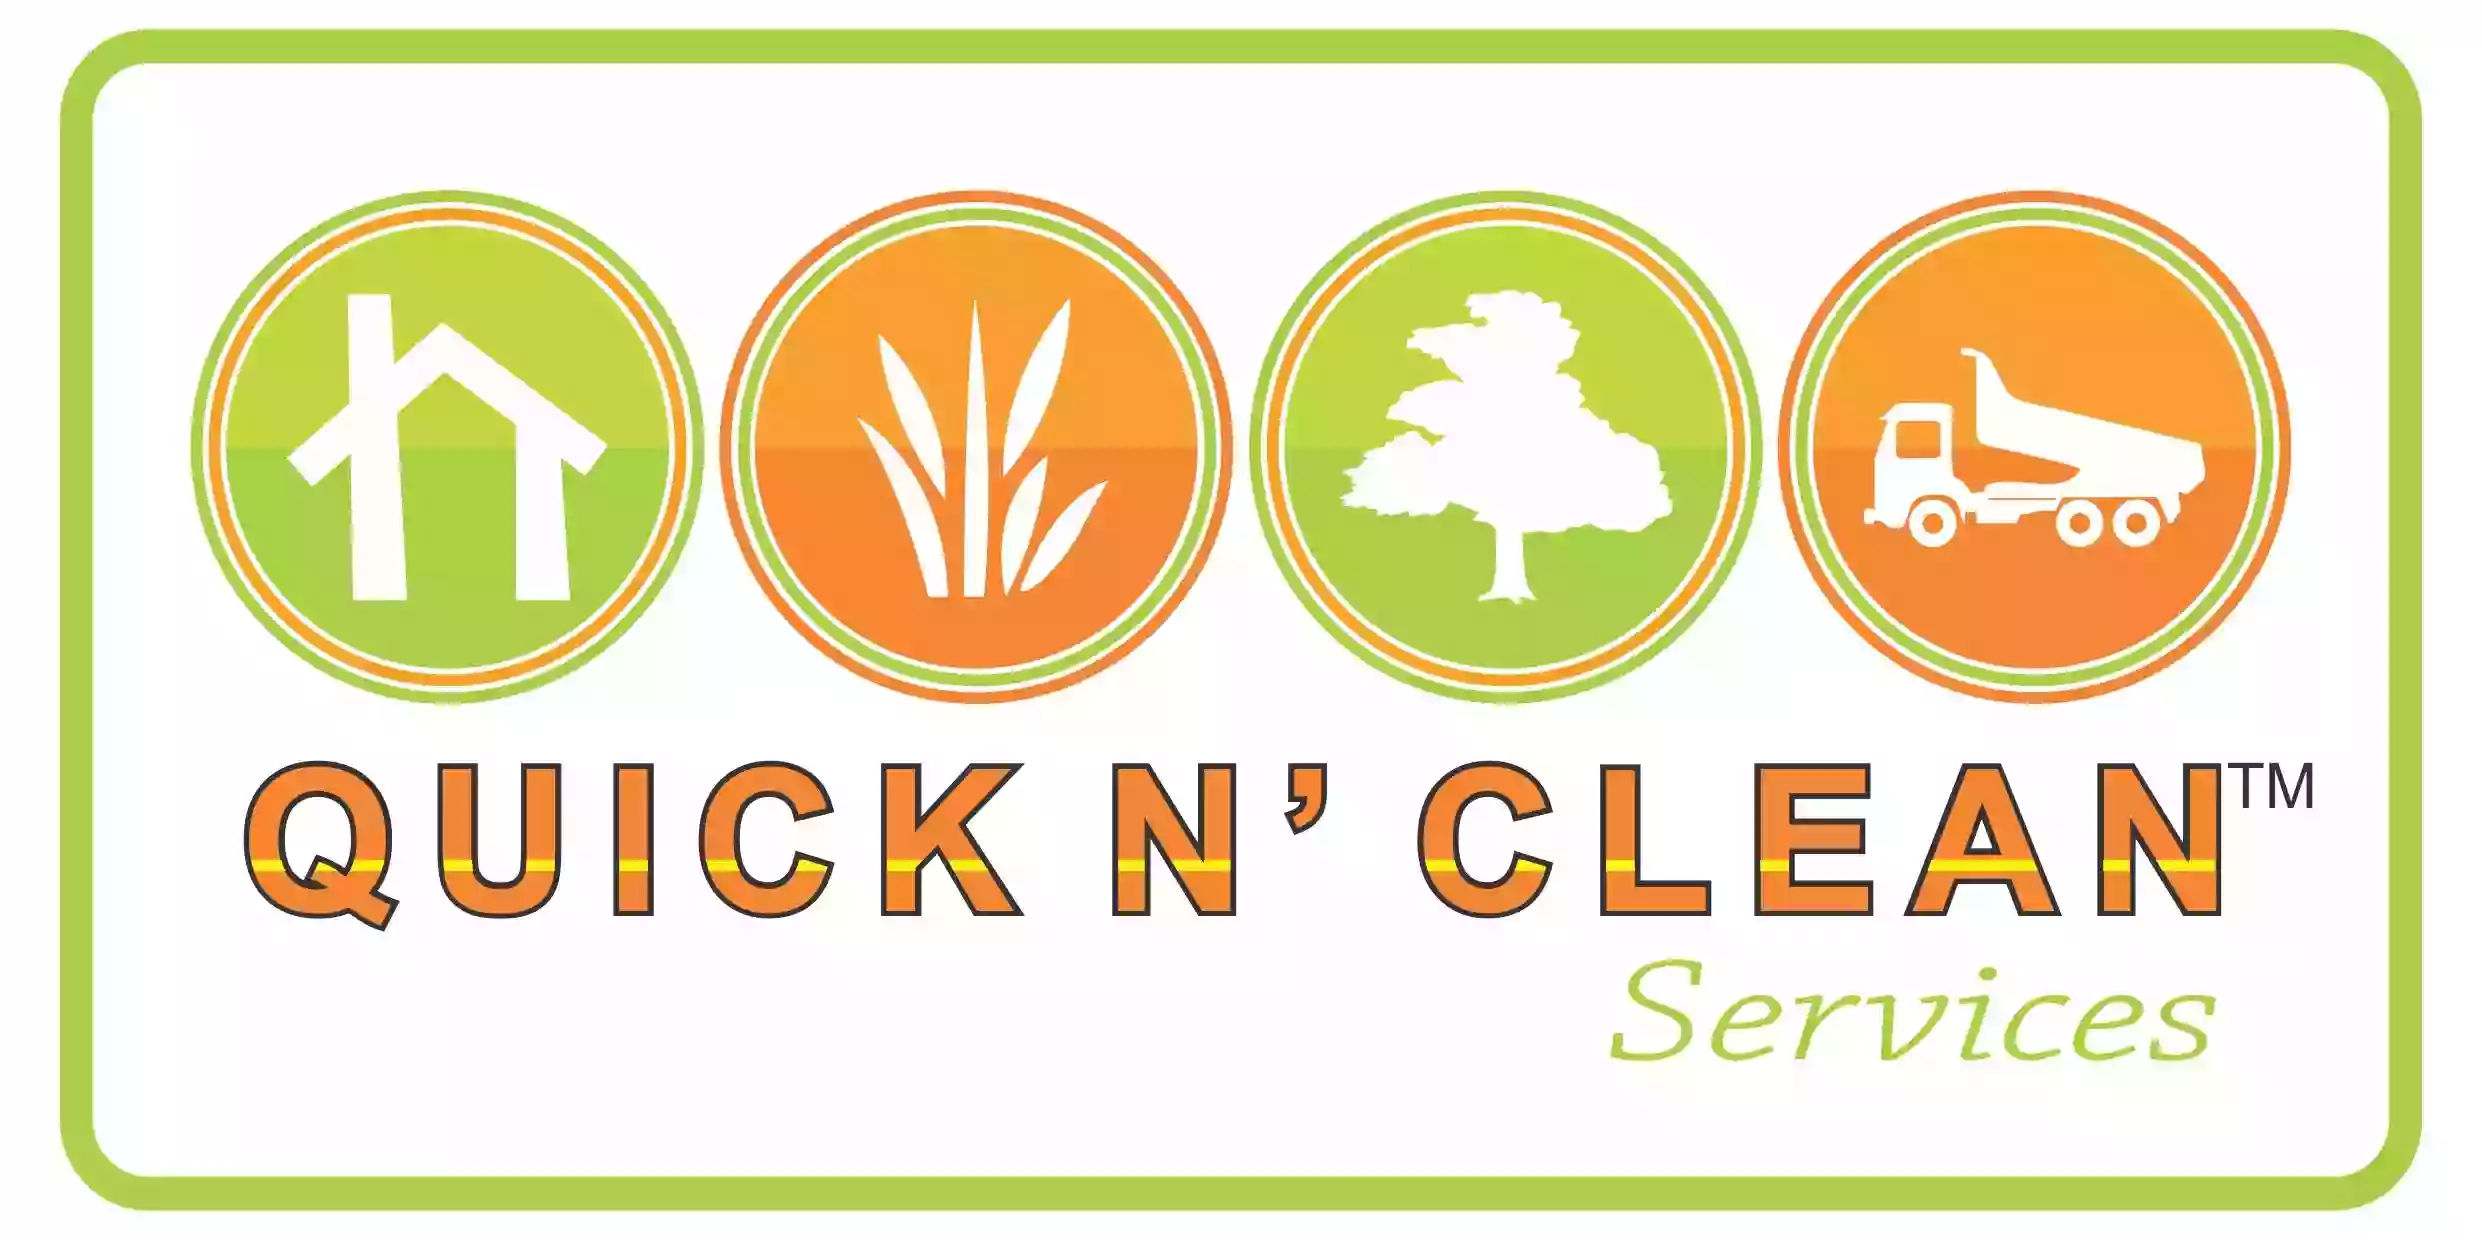 Quick N' Clean Services LLC